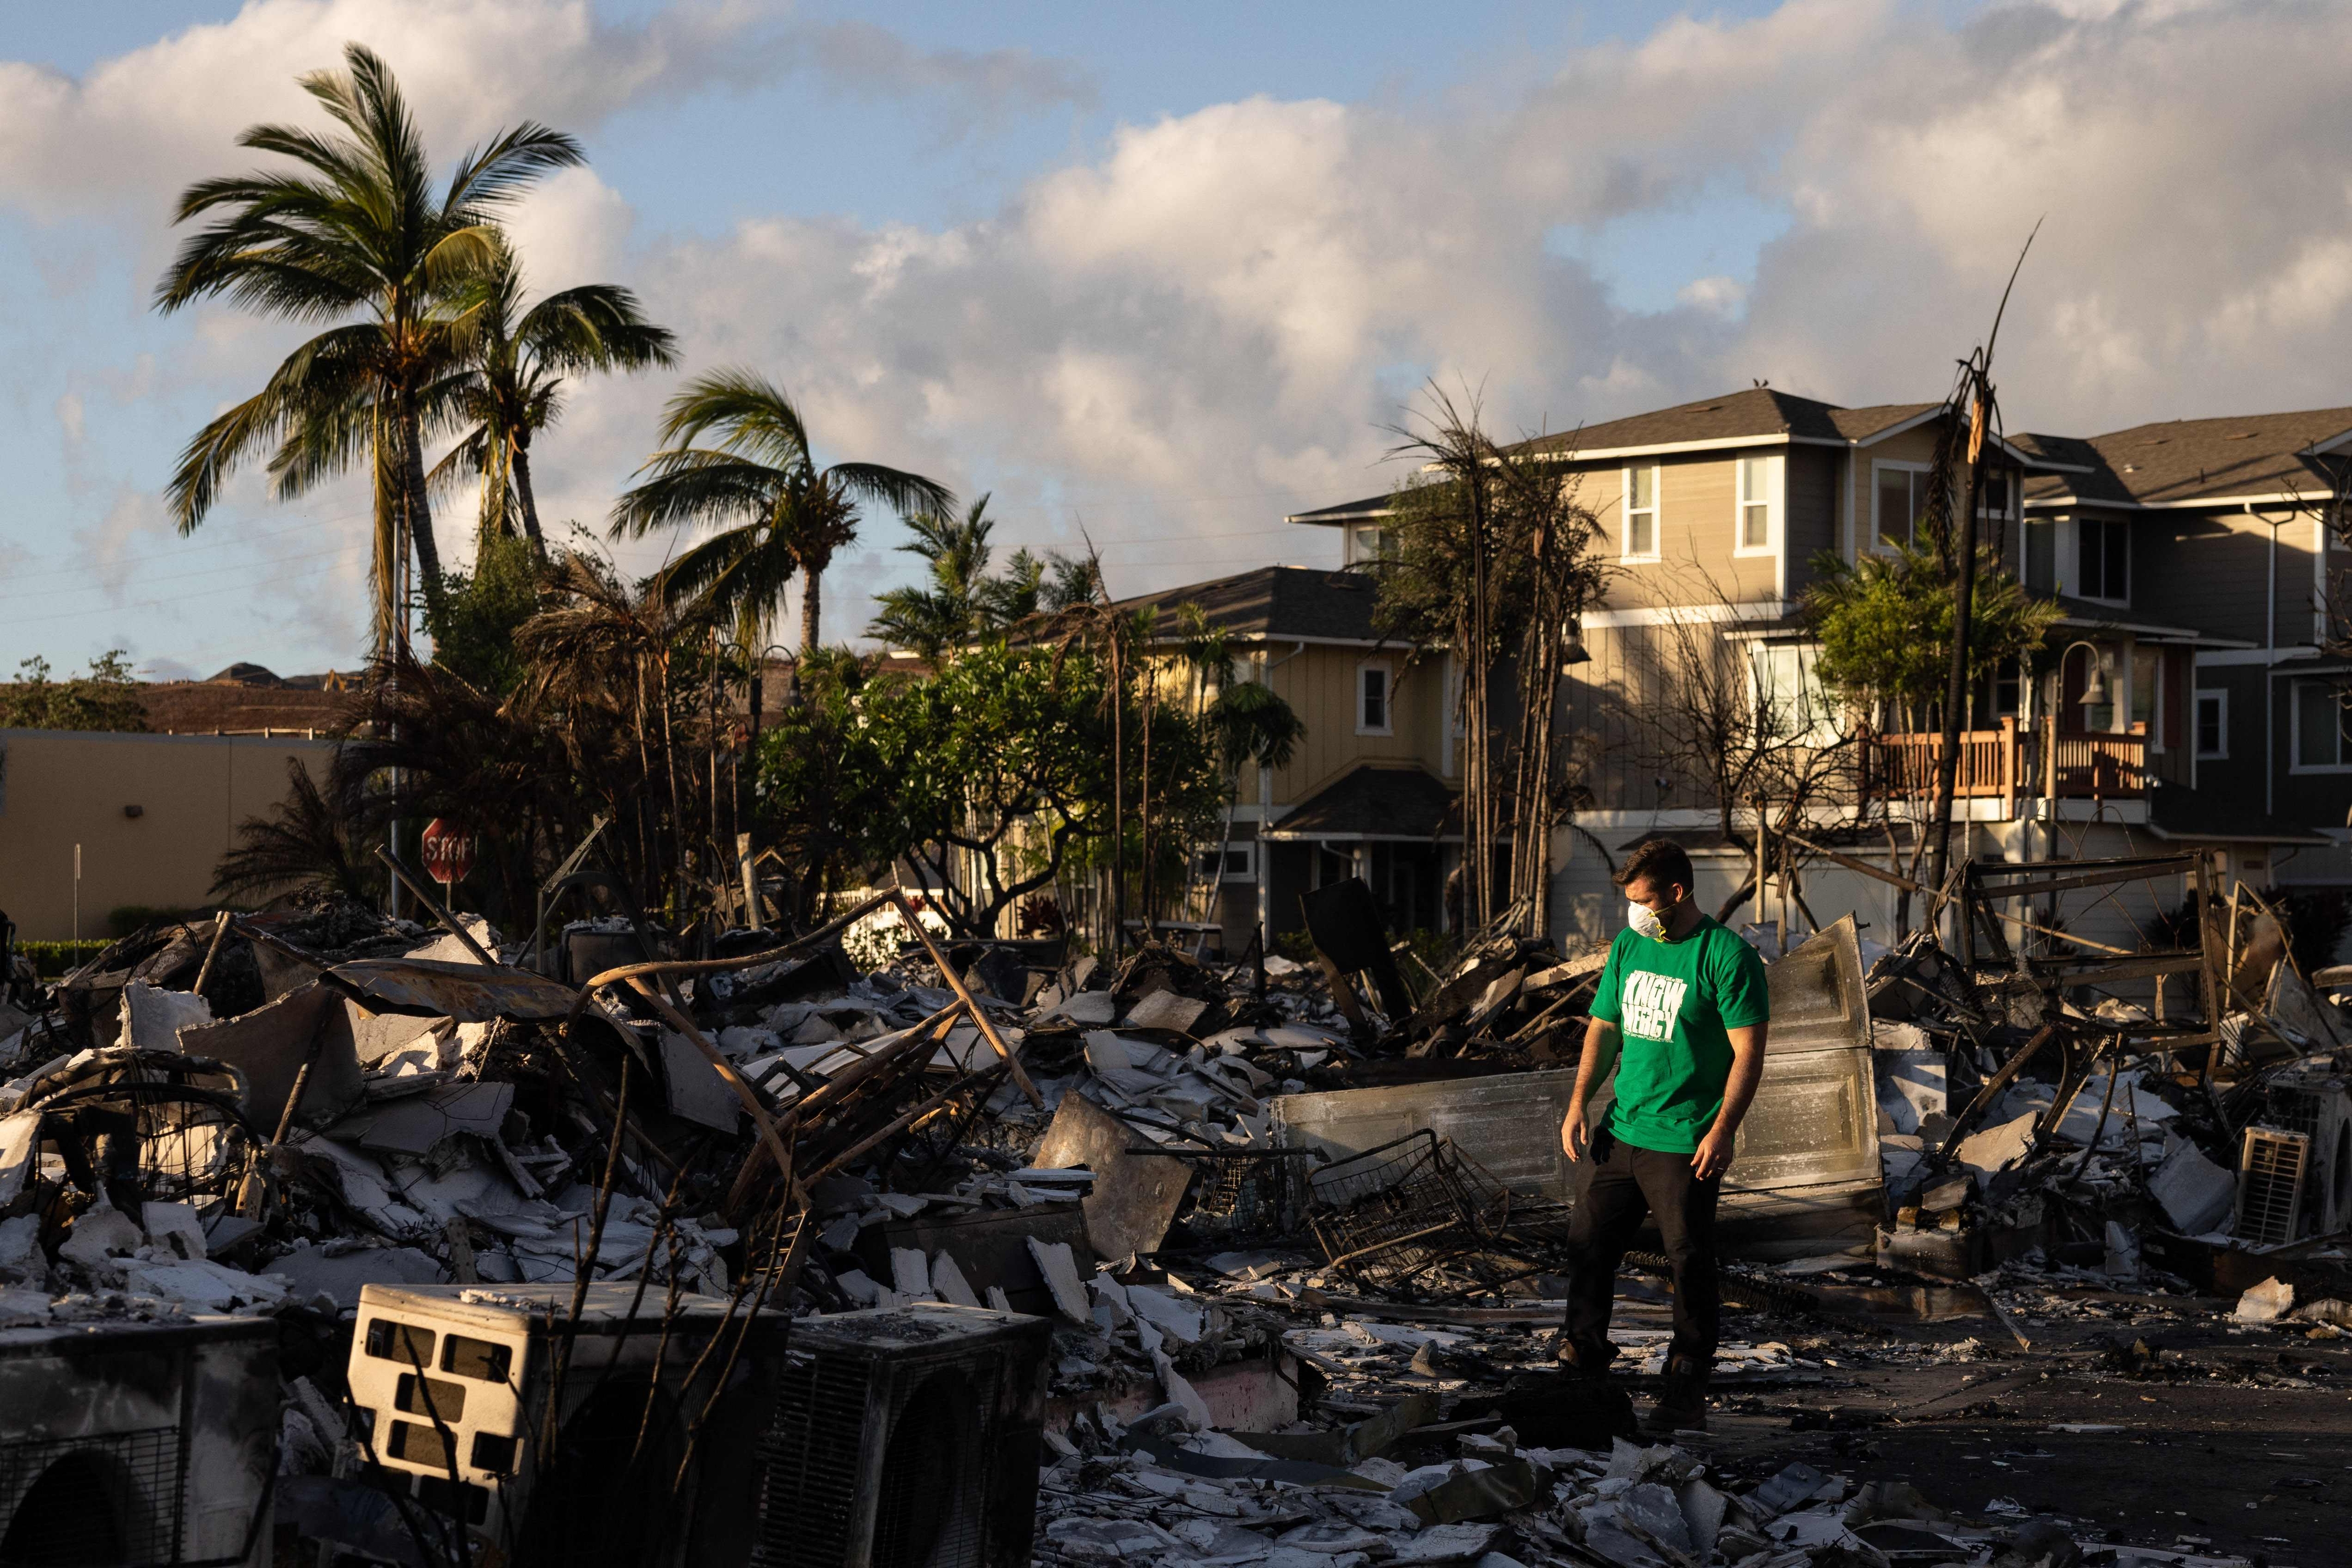 대형 산불이 발생해 최소 93명이 숨지고 폐허가 된 하와이주 마우이섬 해변 라하이나의 거리를 한 남성이 12일(현지시간) 망연자실하게 바라보고 있다. 이번 산불은 미국에서 100여년 만에 최악의 산불 피해 참사가 될 전망이다. 라하이나 AP 연합뉴스